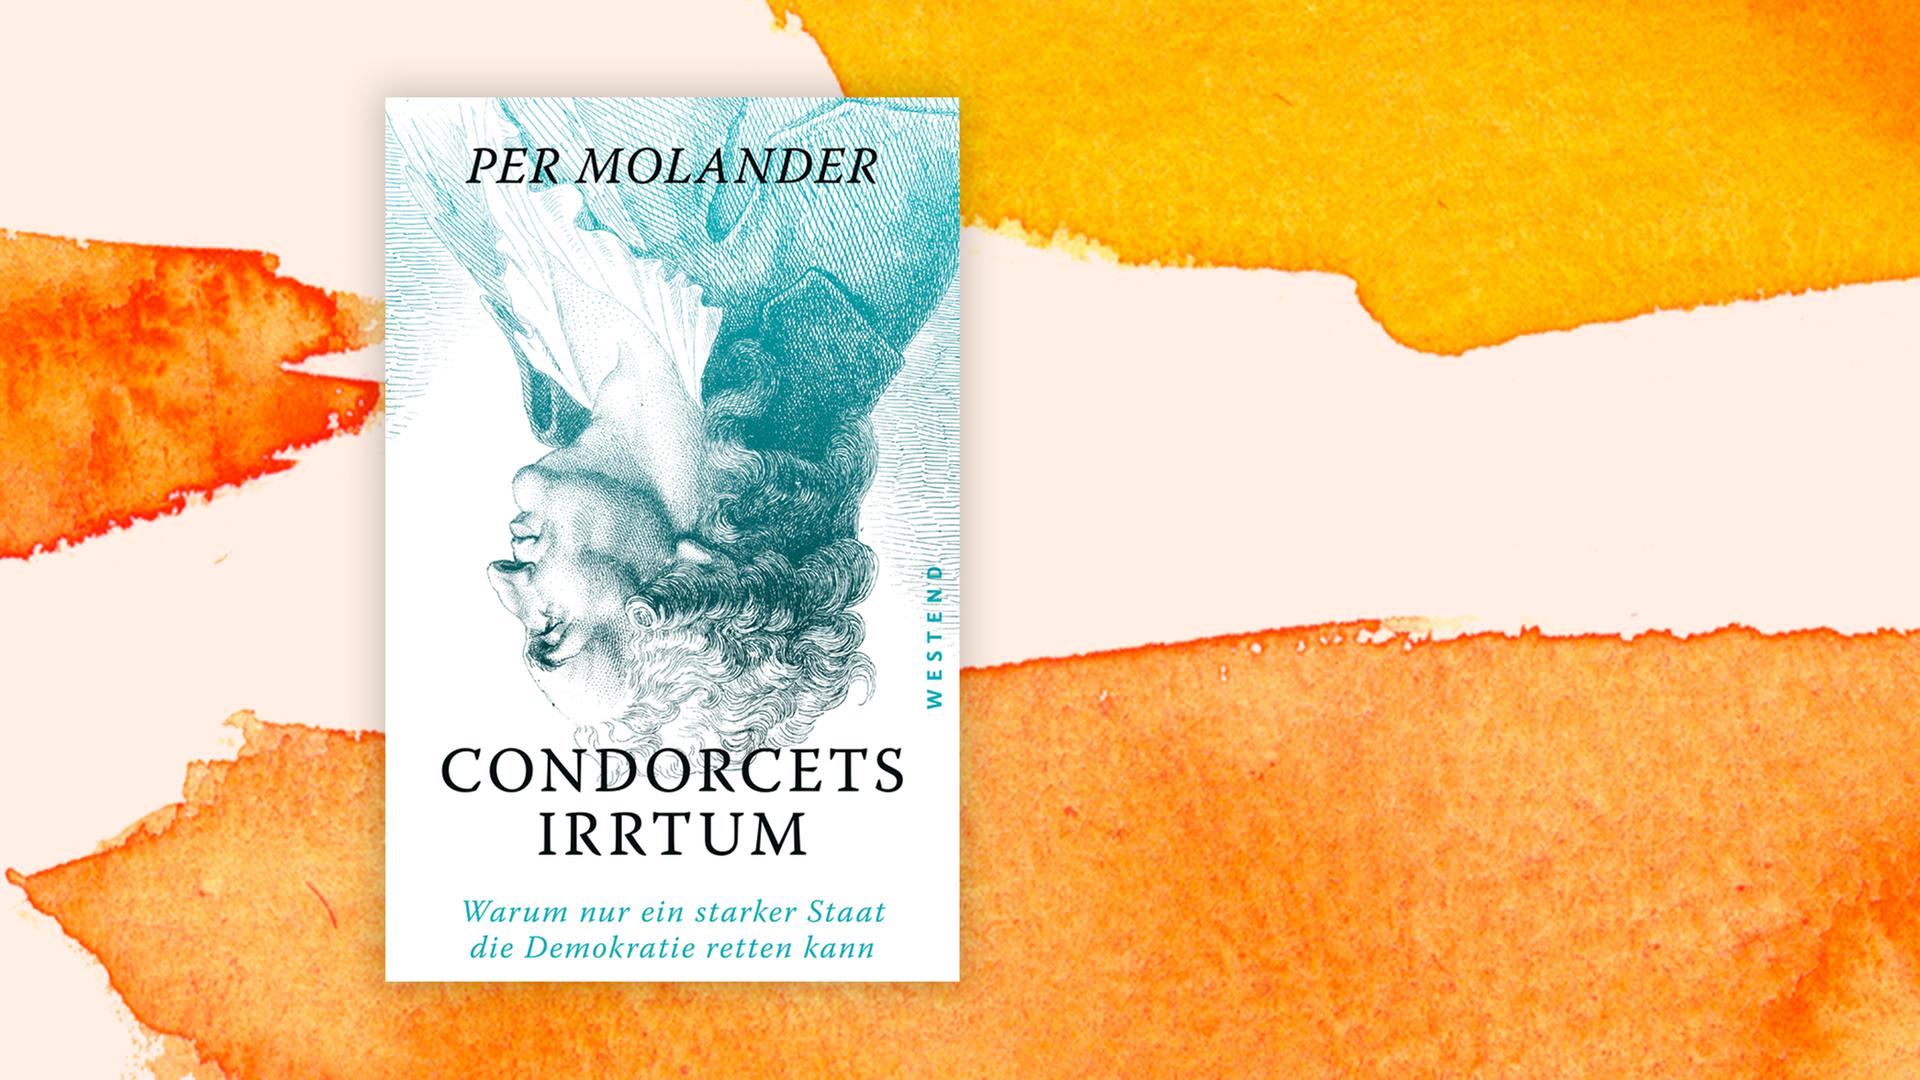 Das Buchcover "Condorcets Irrtum" von Per Molander ist vor einem grafischen Hintergrund zu sehen.